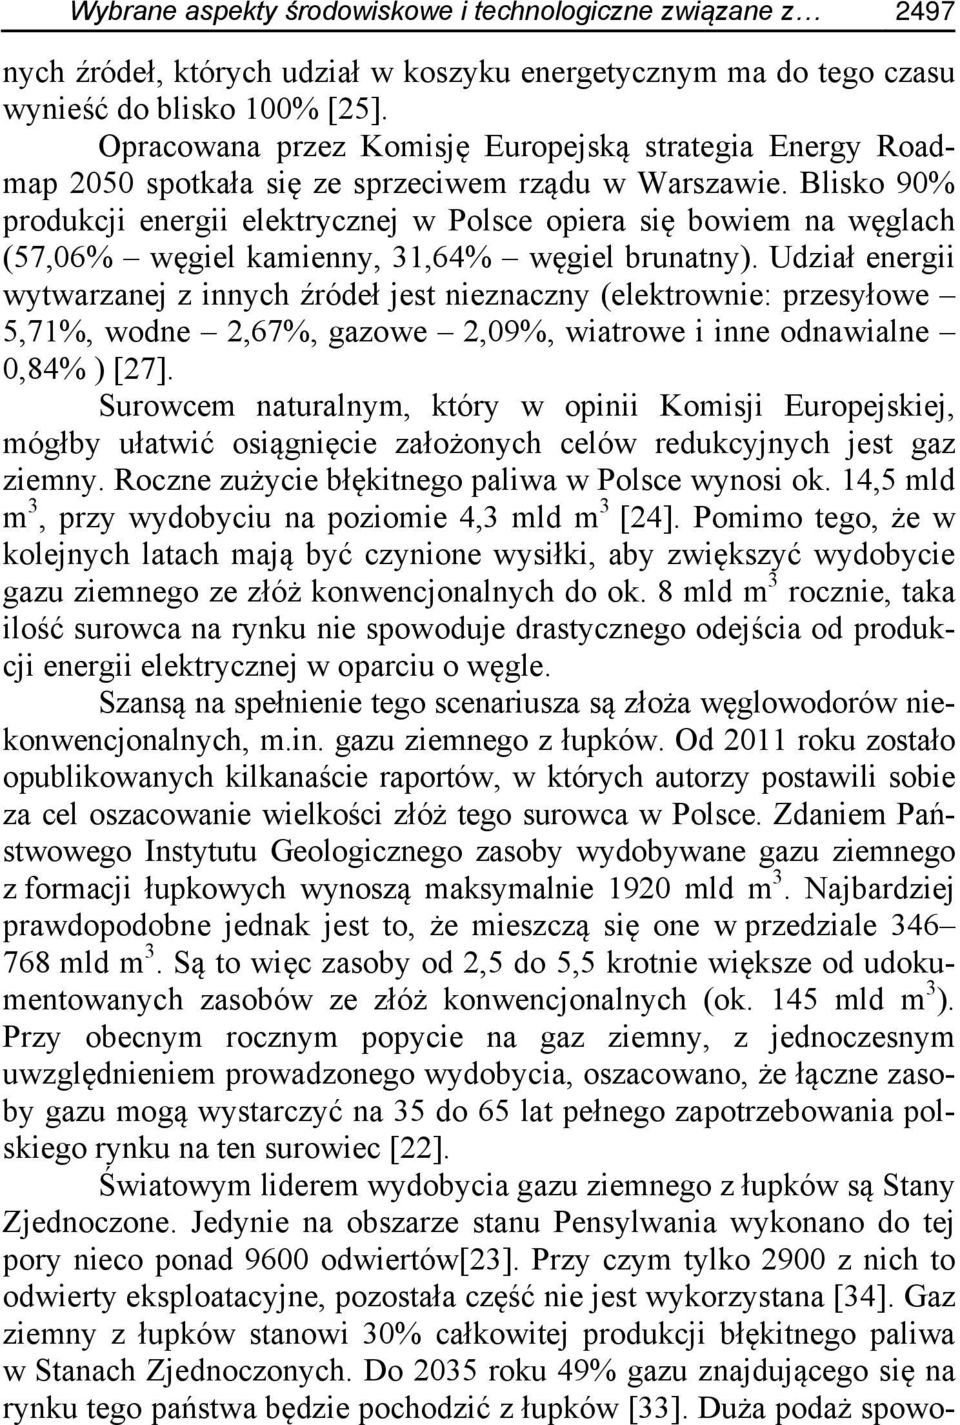 Blisko 90% produkcji energii elektrycznej w Polsce opiera się bowiem na węglach (57,06% węgiel kamienny, 31,64% węgiel brunatny).